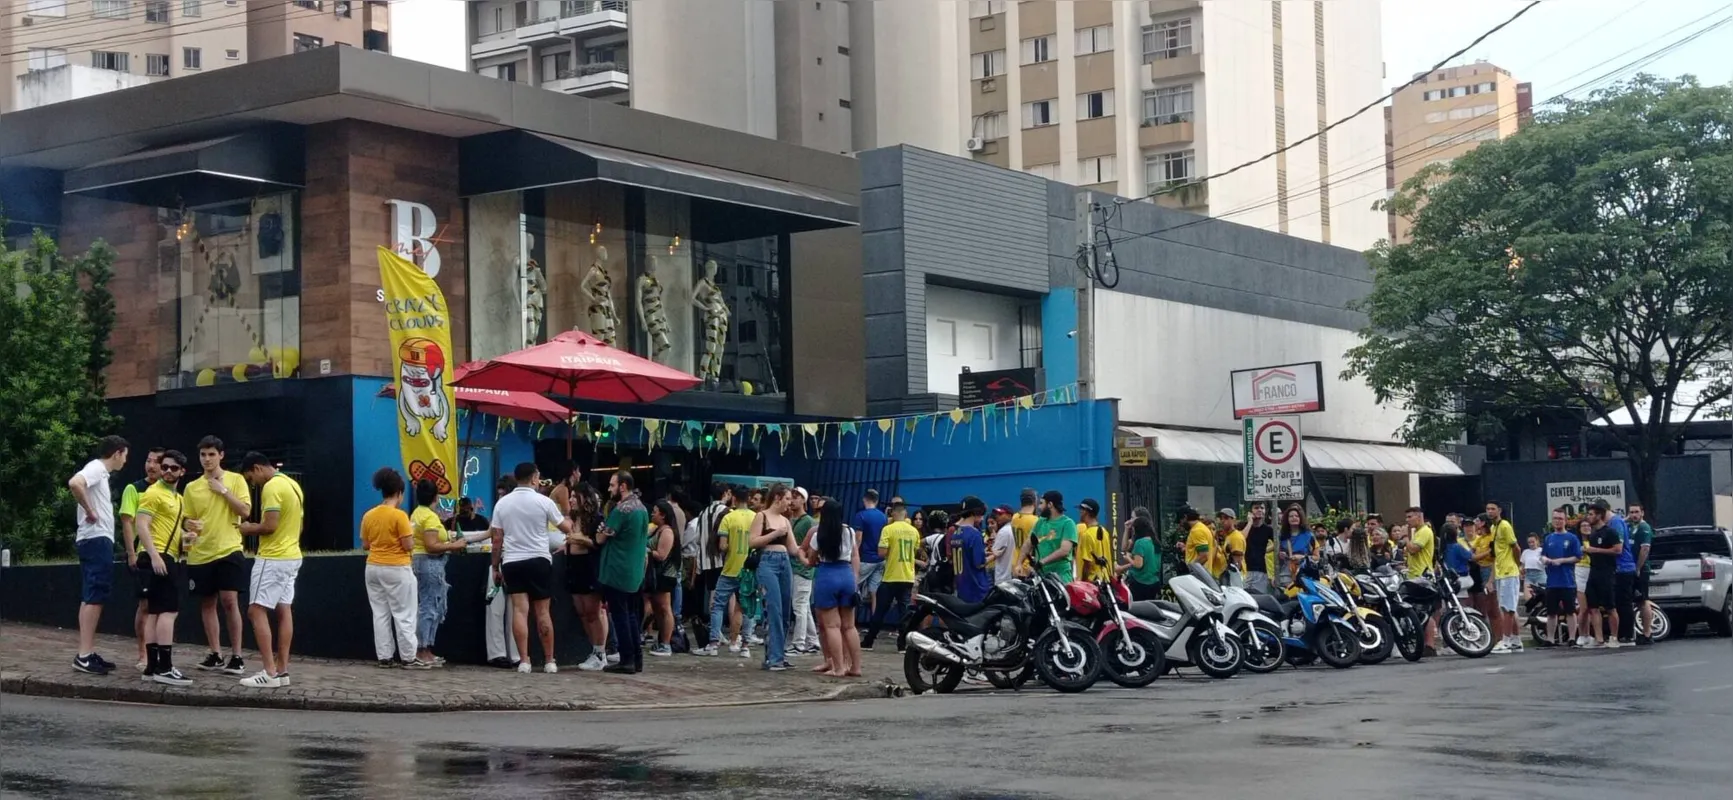 Um dos locais de maior concentração para o jogo do Brasil foi a rua Paranaguá, que ficou com todos os bares lotados.